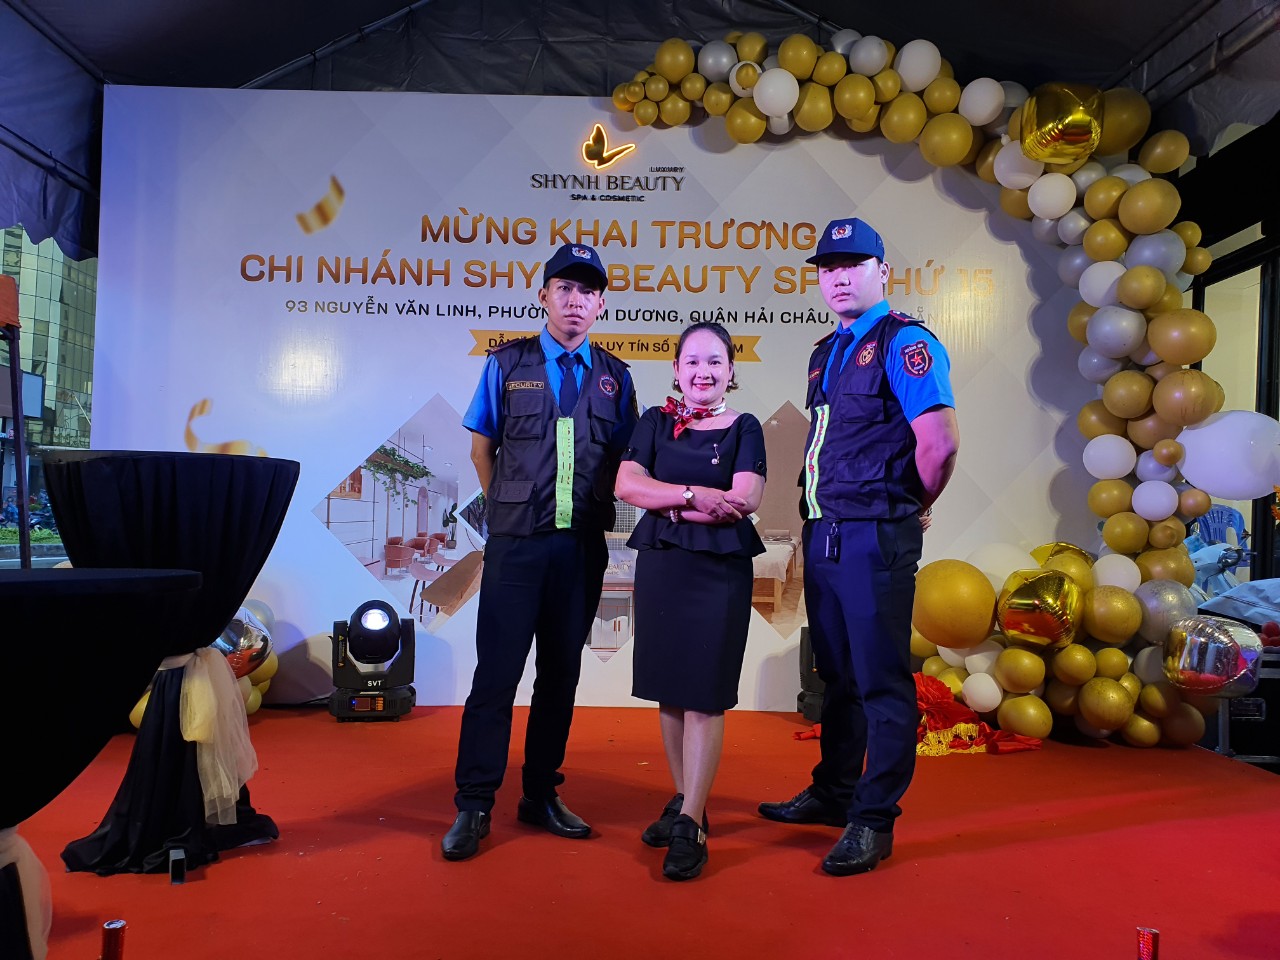 Quy trình thực hiện dịch vụ bảo vệ sự kiện tại Đà Nẵng